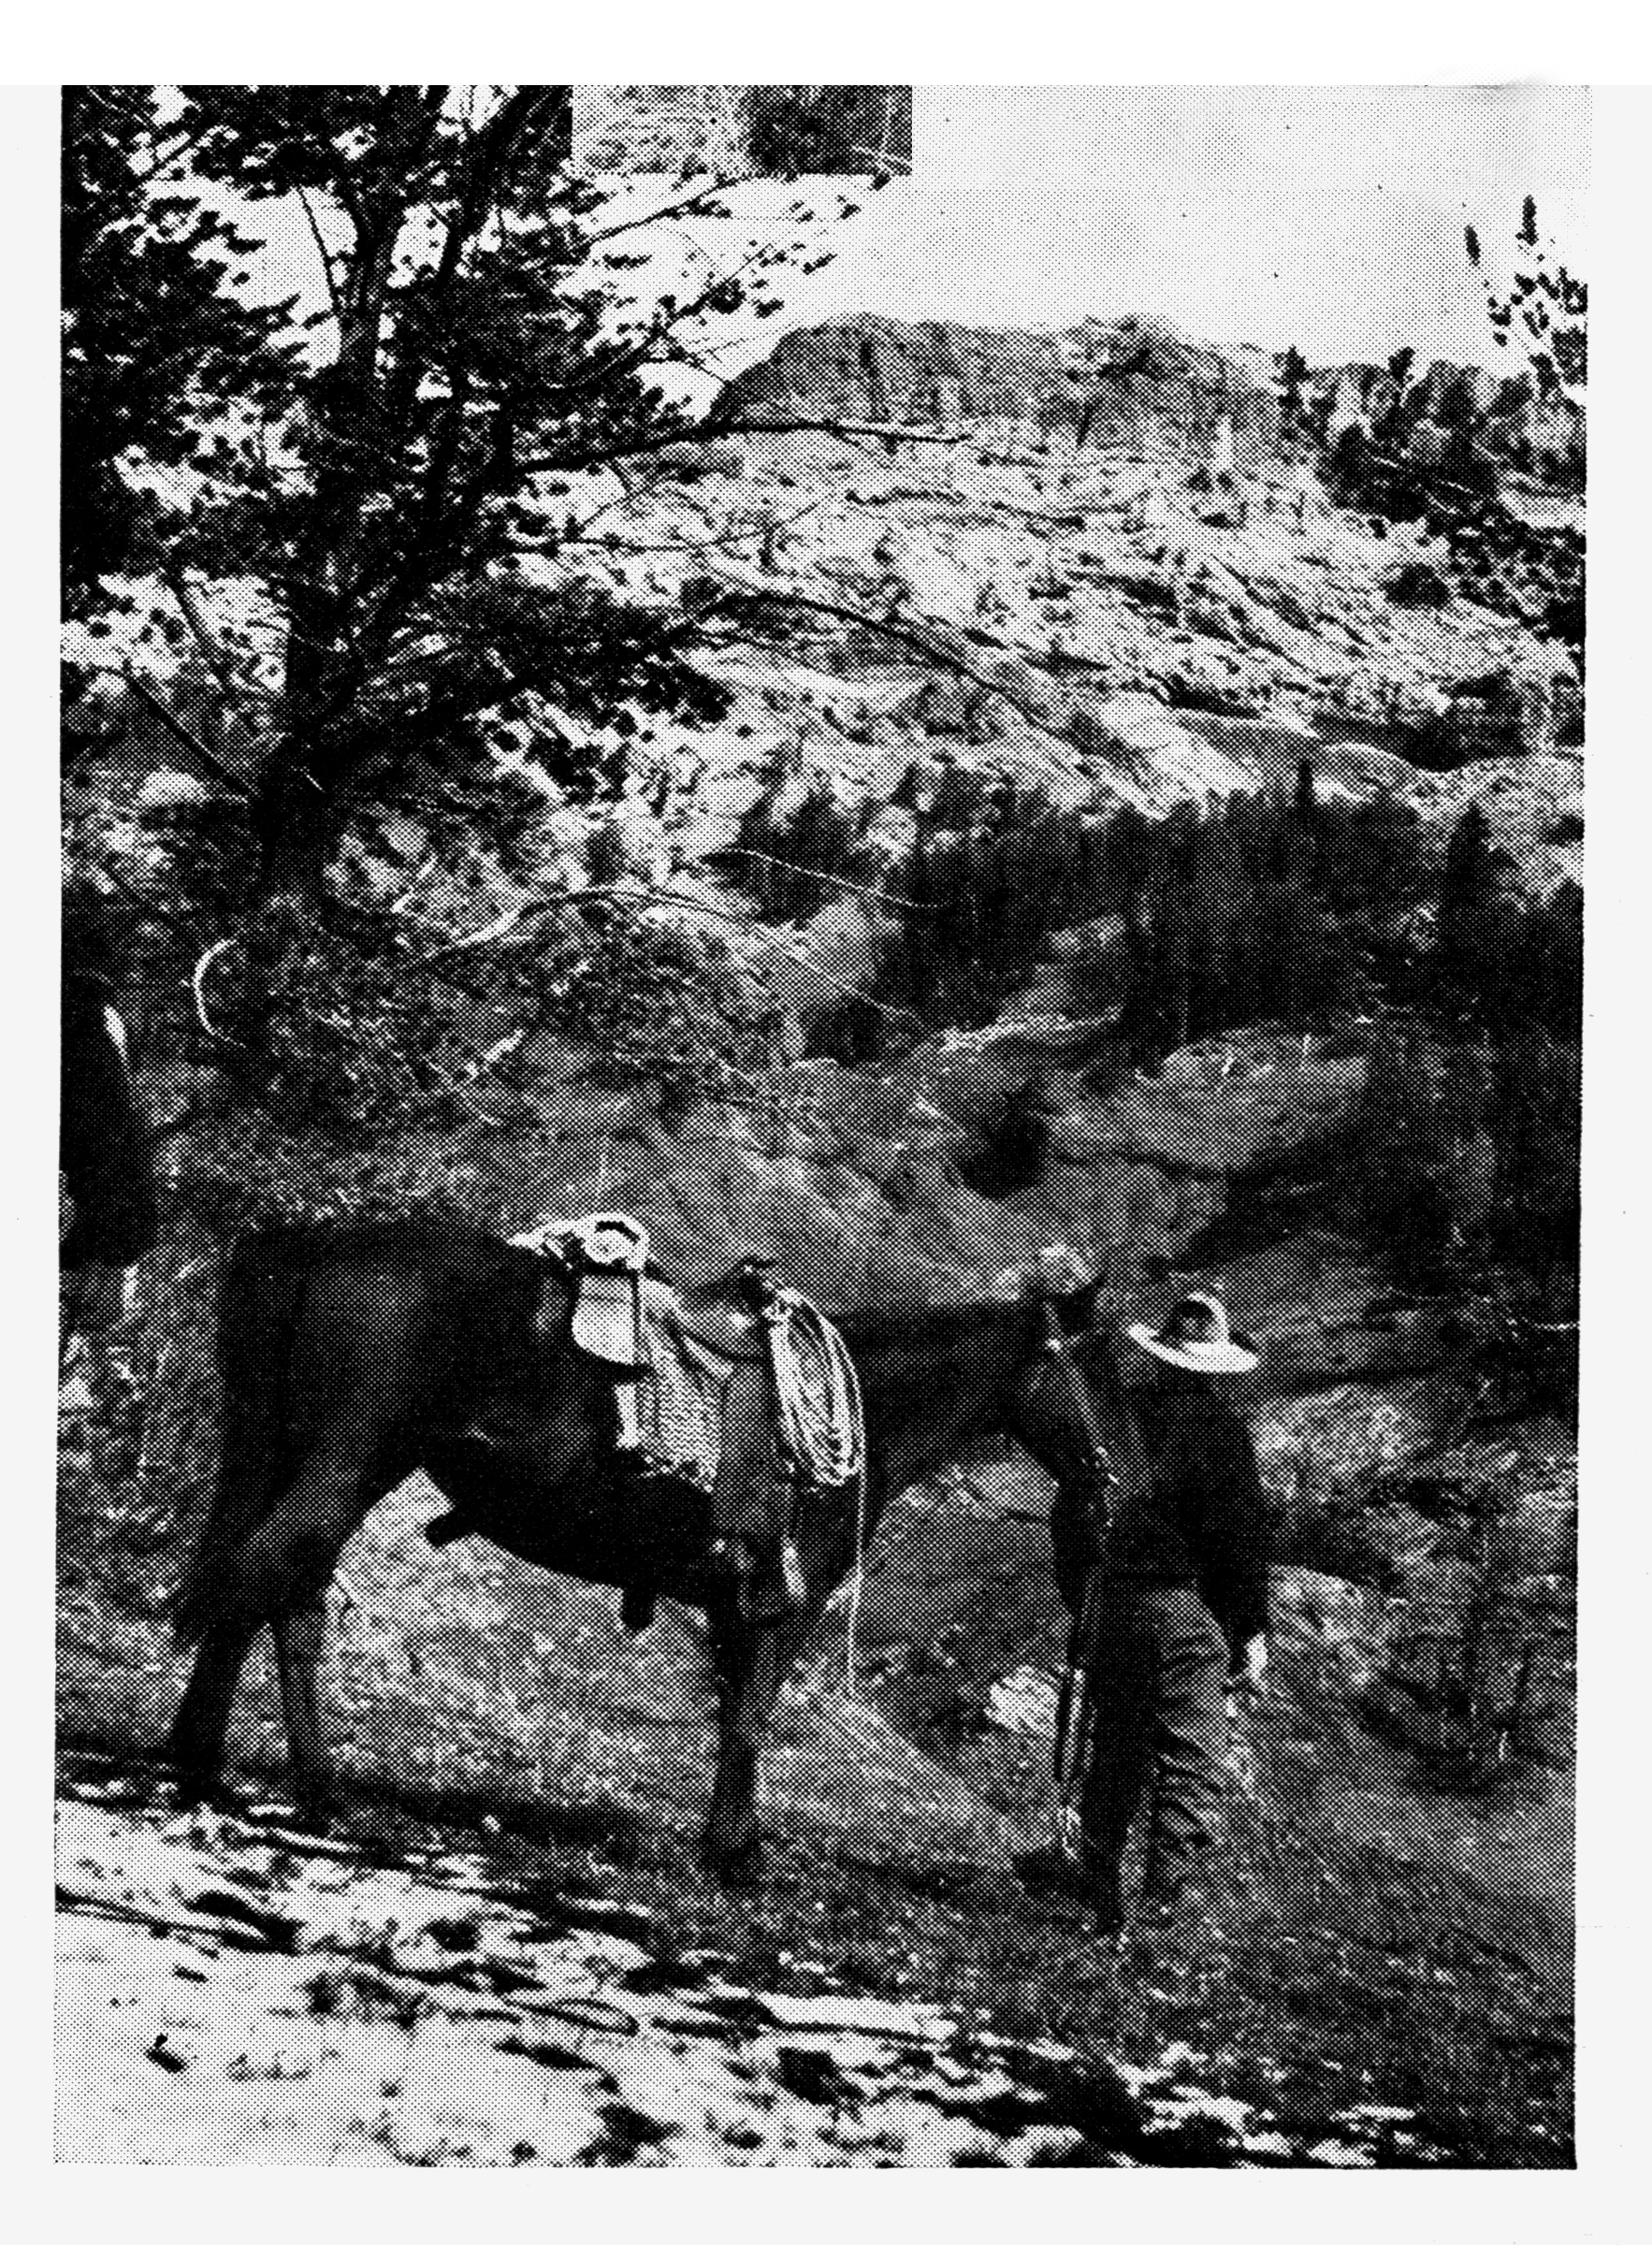 Charlie Elliot's elk hunt in Wyoming